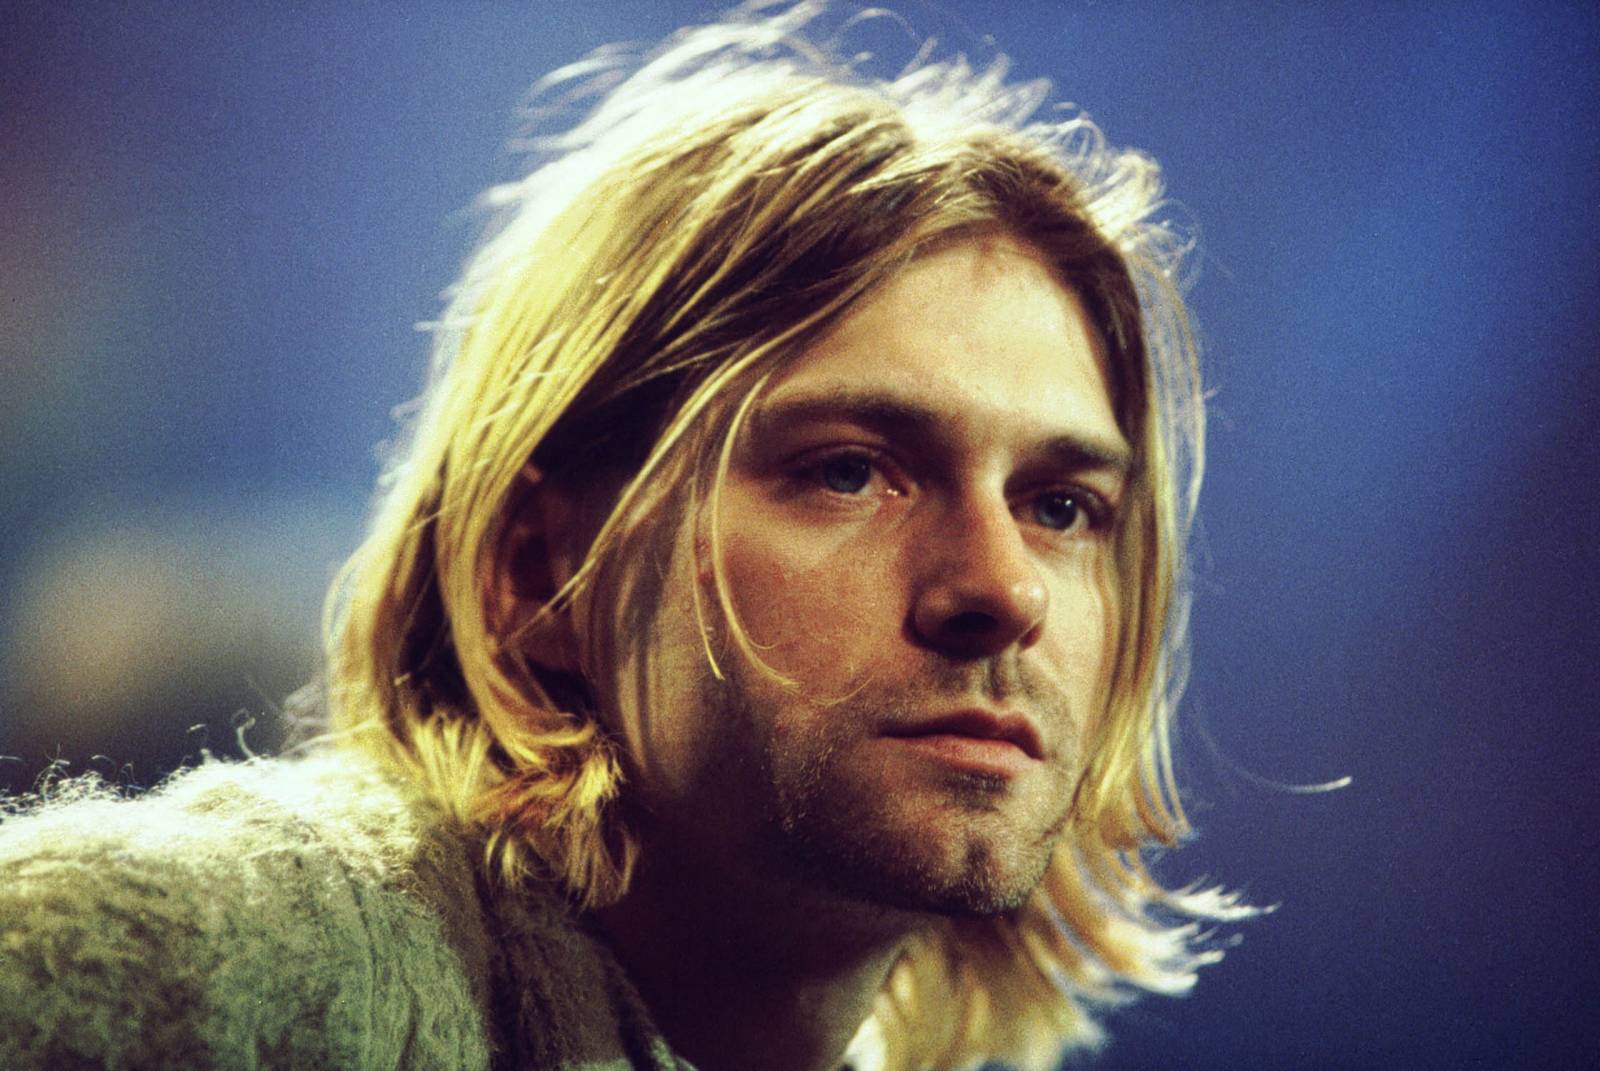 VIDEO: Chystá se film o Kurtu Cobainovi? Podívejte se na trailer